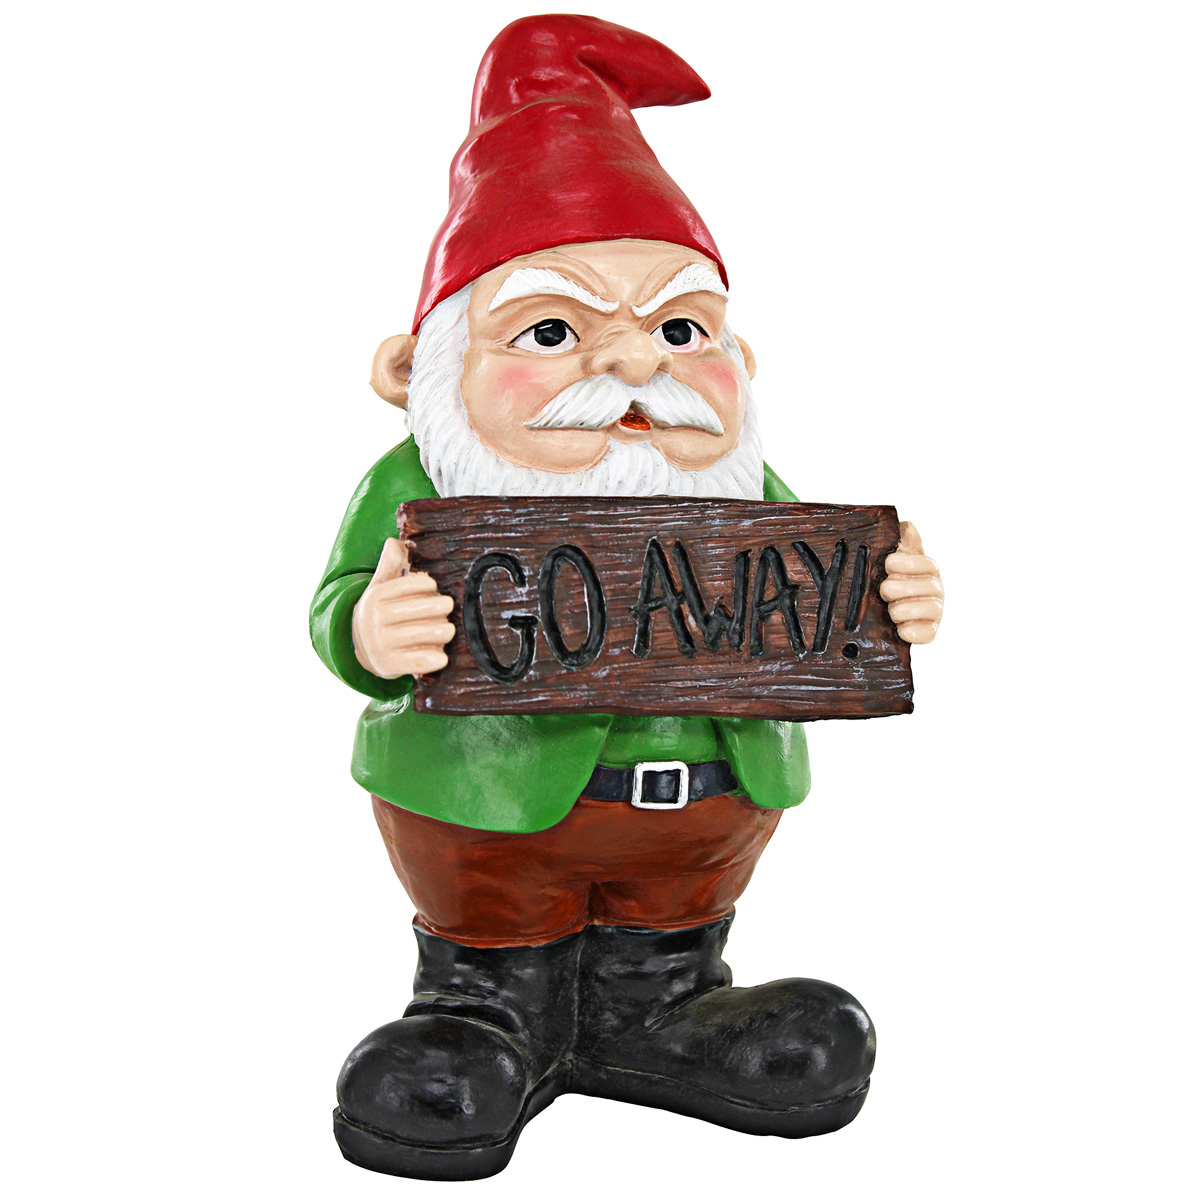 Picture 3 for Mr Bad Attitude "Go Away" Gnome Statue